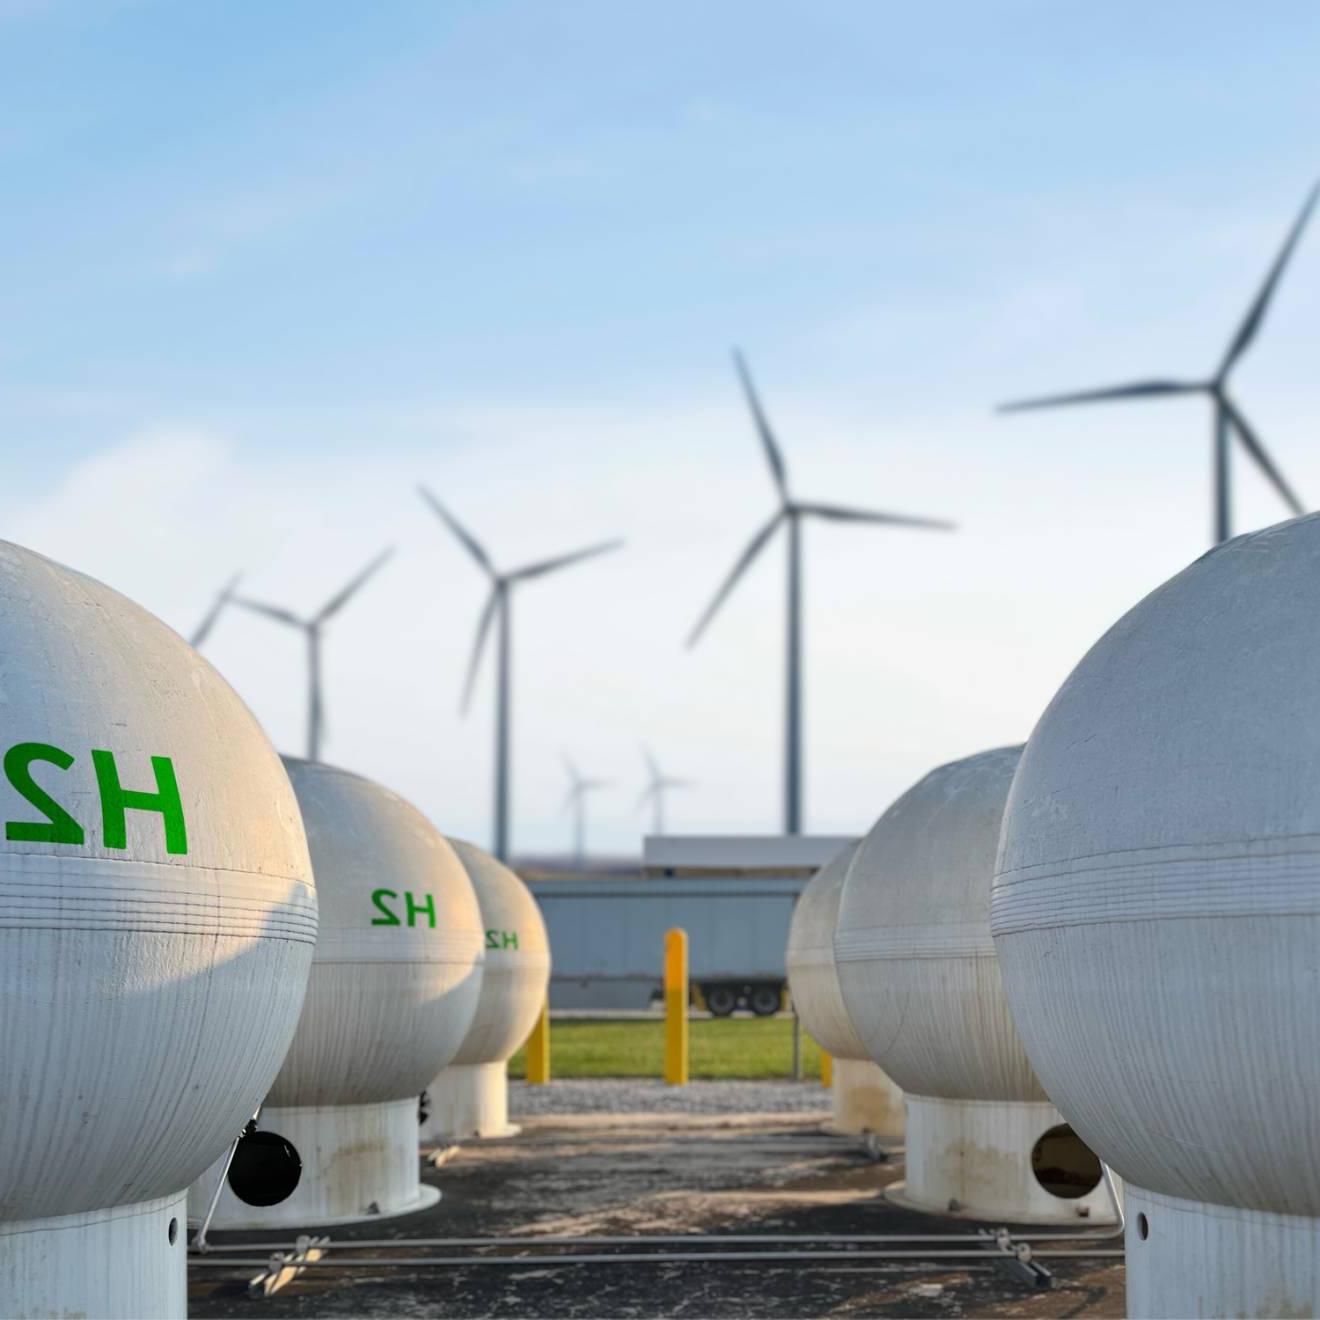 两排白色的球形罐，上面用绿色印着H2, 背景是四个风力涡轮机, 湛蓝的天空